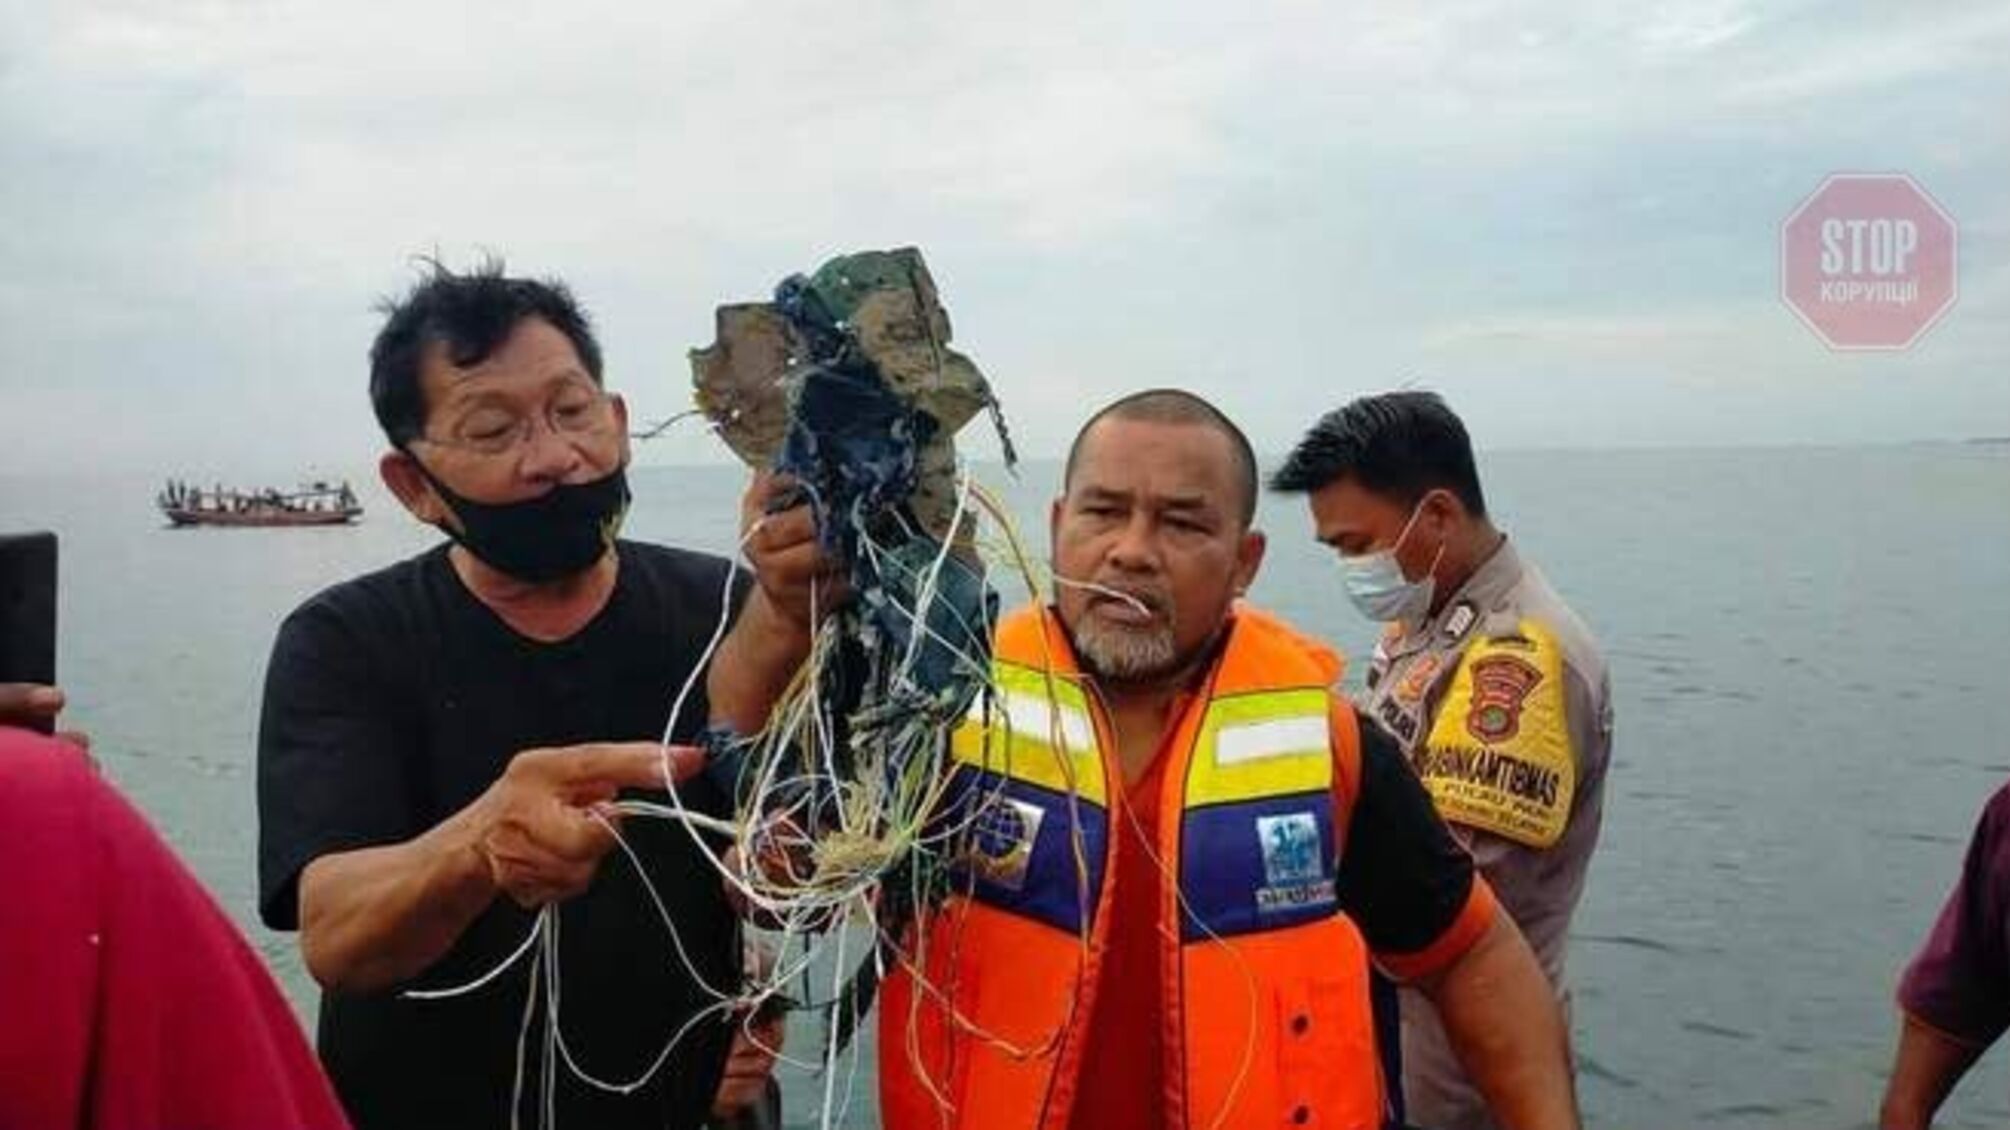 Найдені уламки та тіла людей: в Індонезії розбився пасажирський літак Boeing 737-500 (відео)